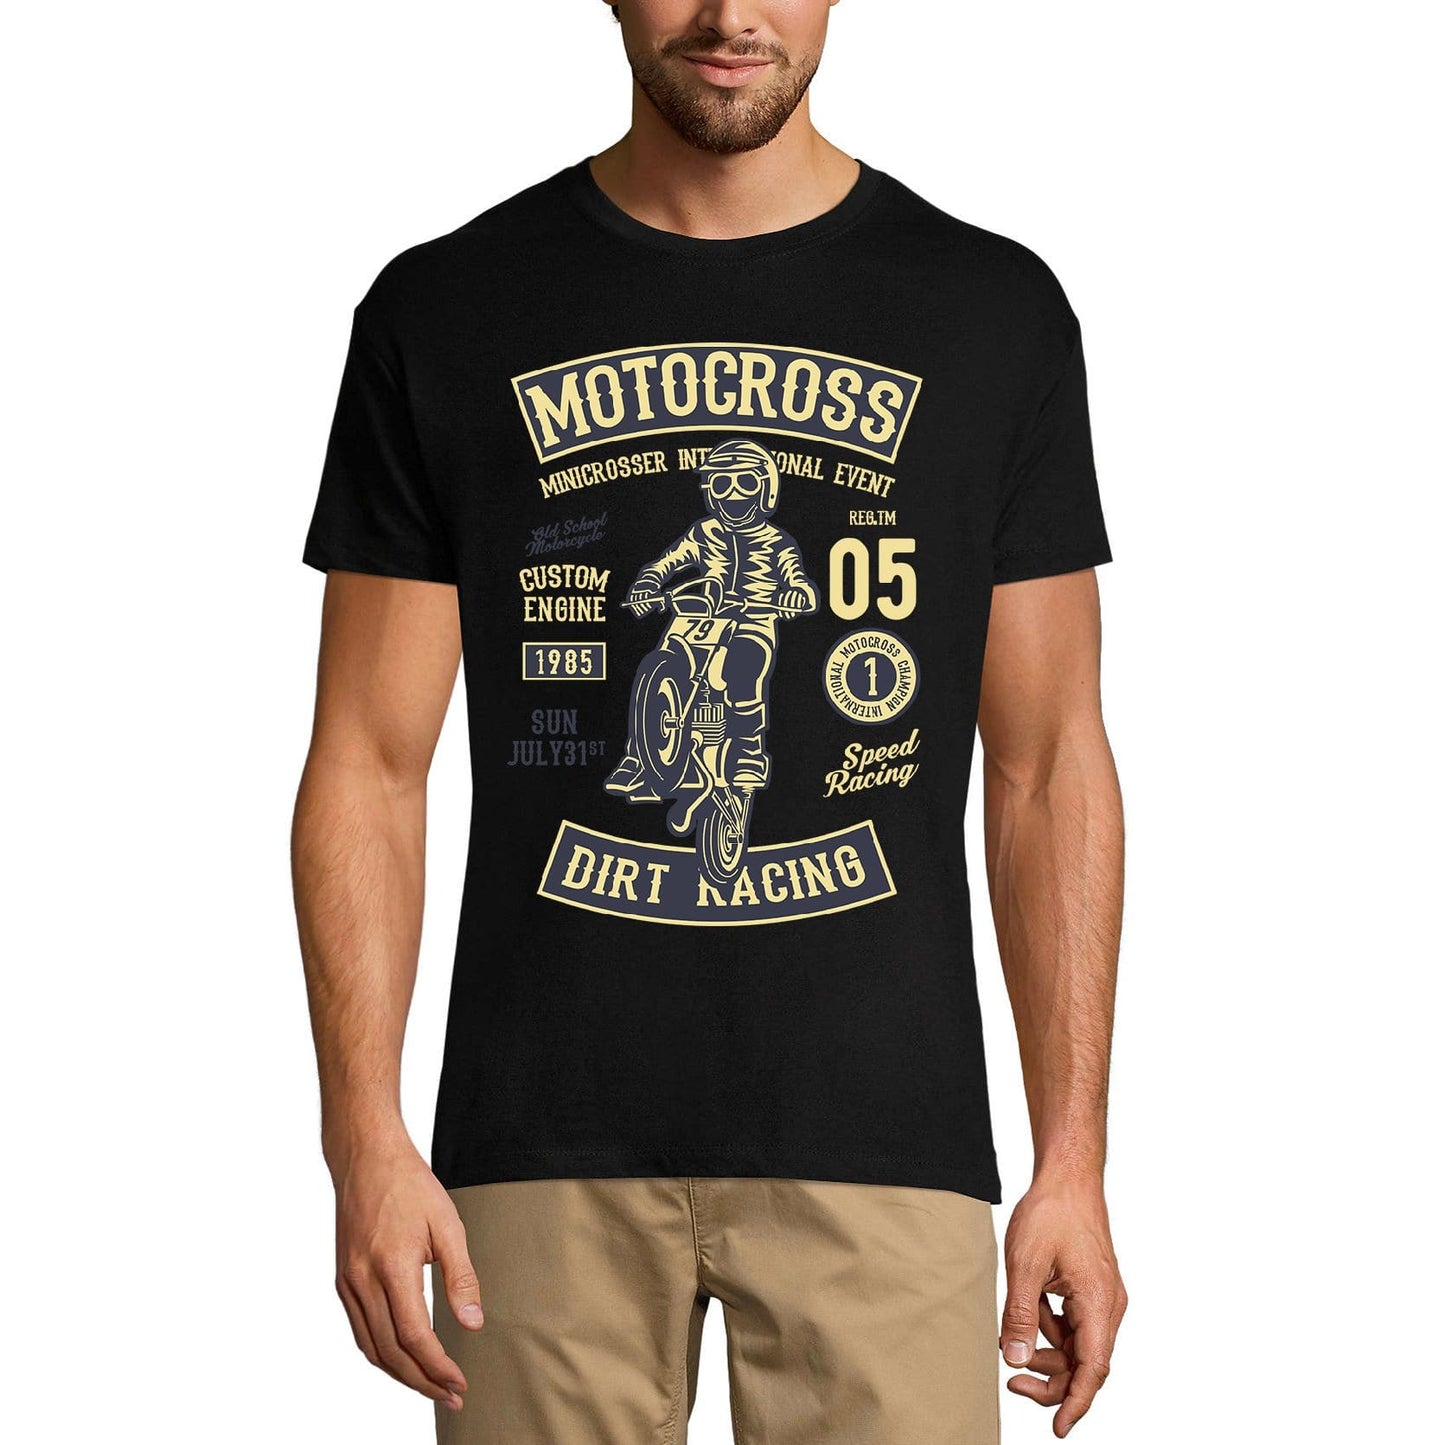 ULTRABASIC Men's T-Shirt Motocross Minicrosser Race - Dirt Racing 1985 Tee Shirt